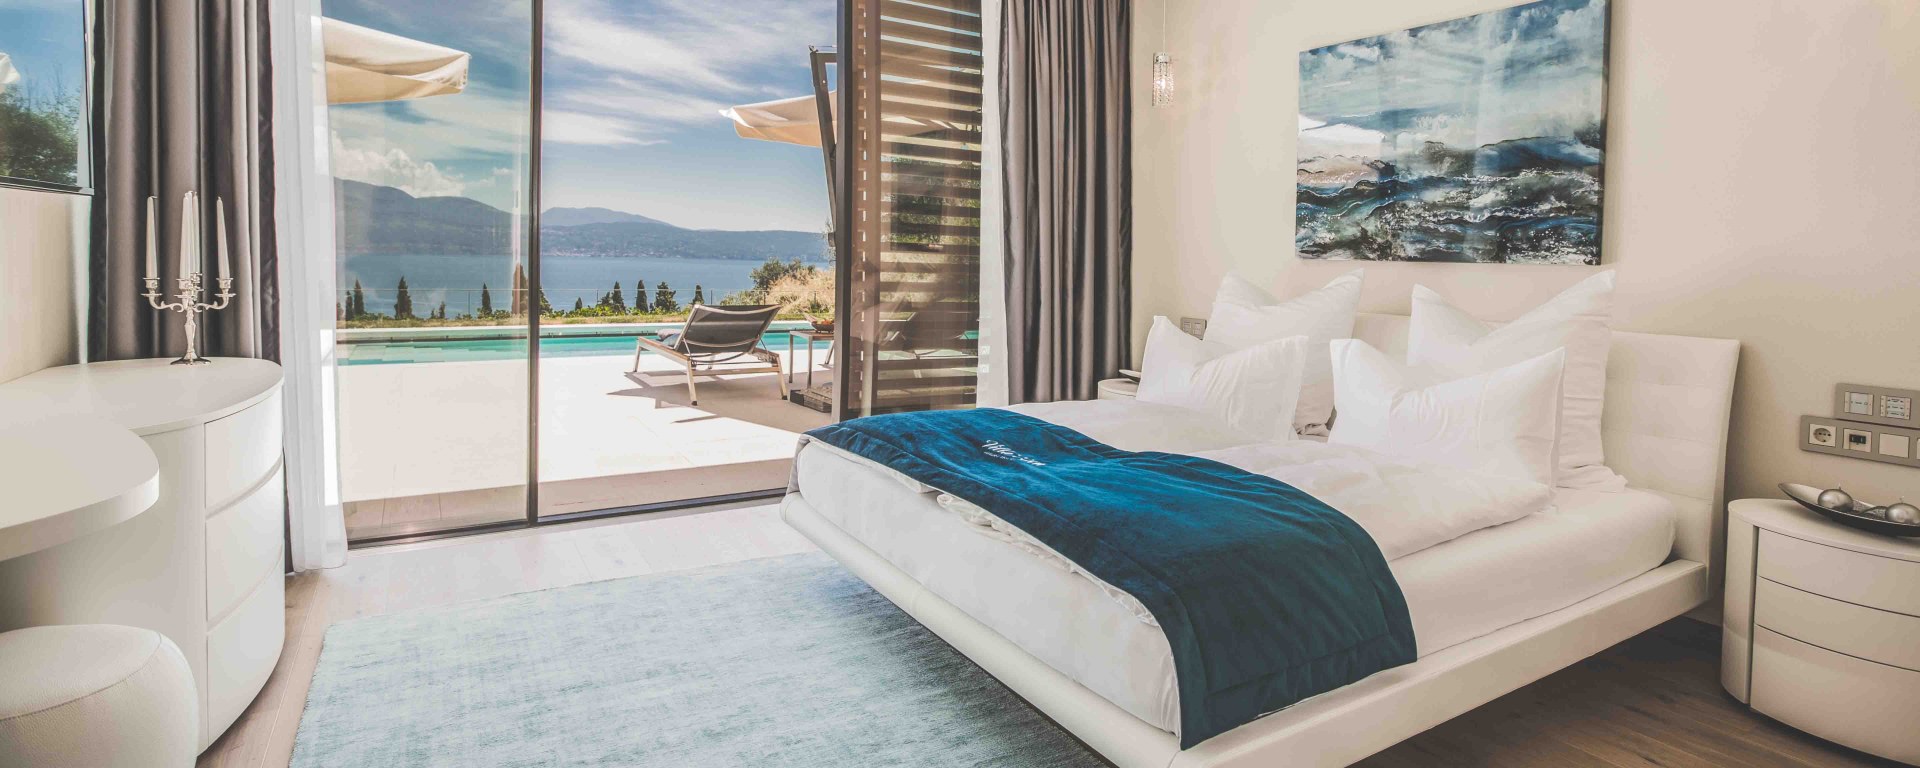 Hotel Gardasee - Villa Eden Luxury Resort